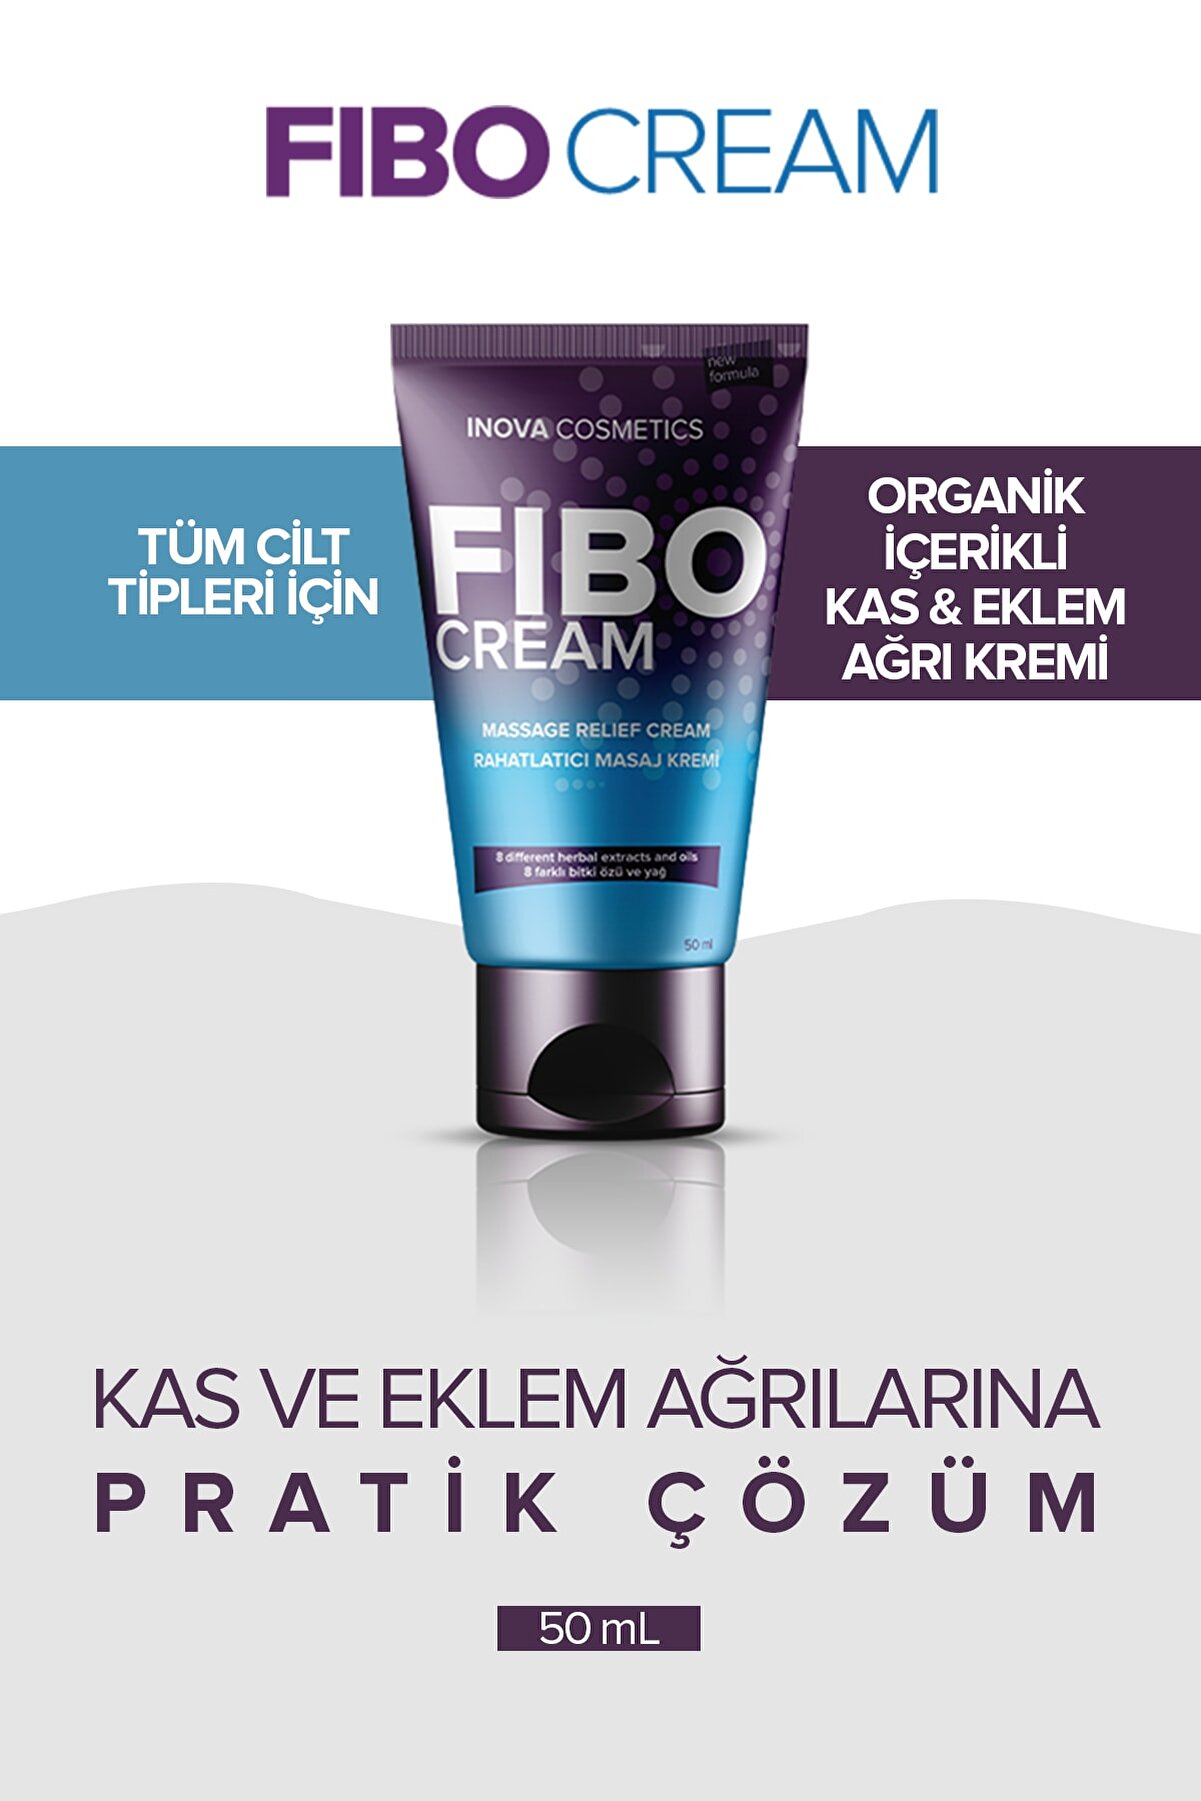 Fibo Cream Masaj Kremi